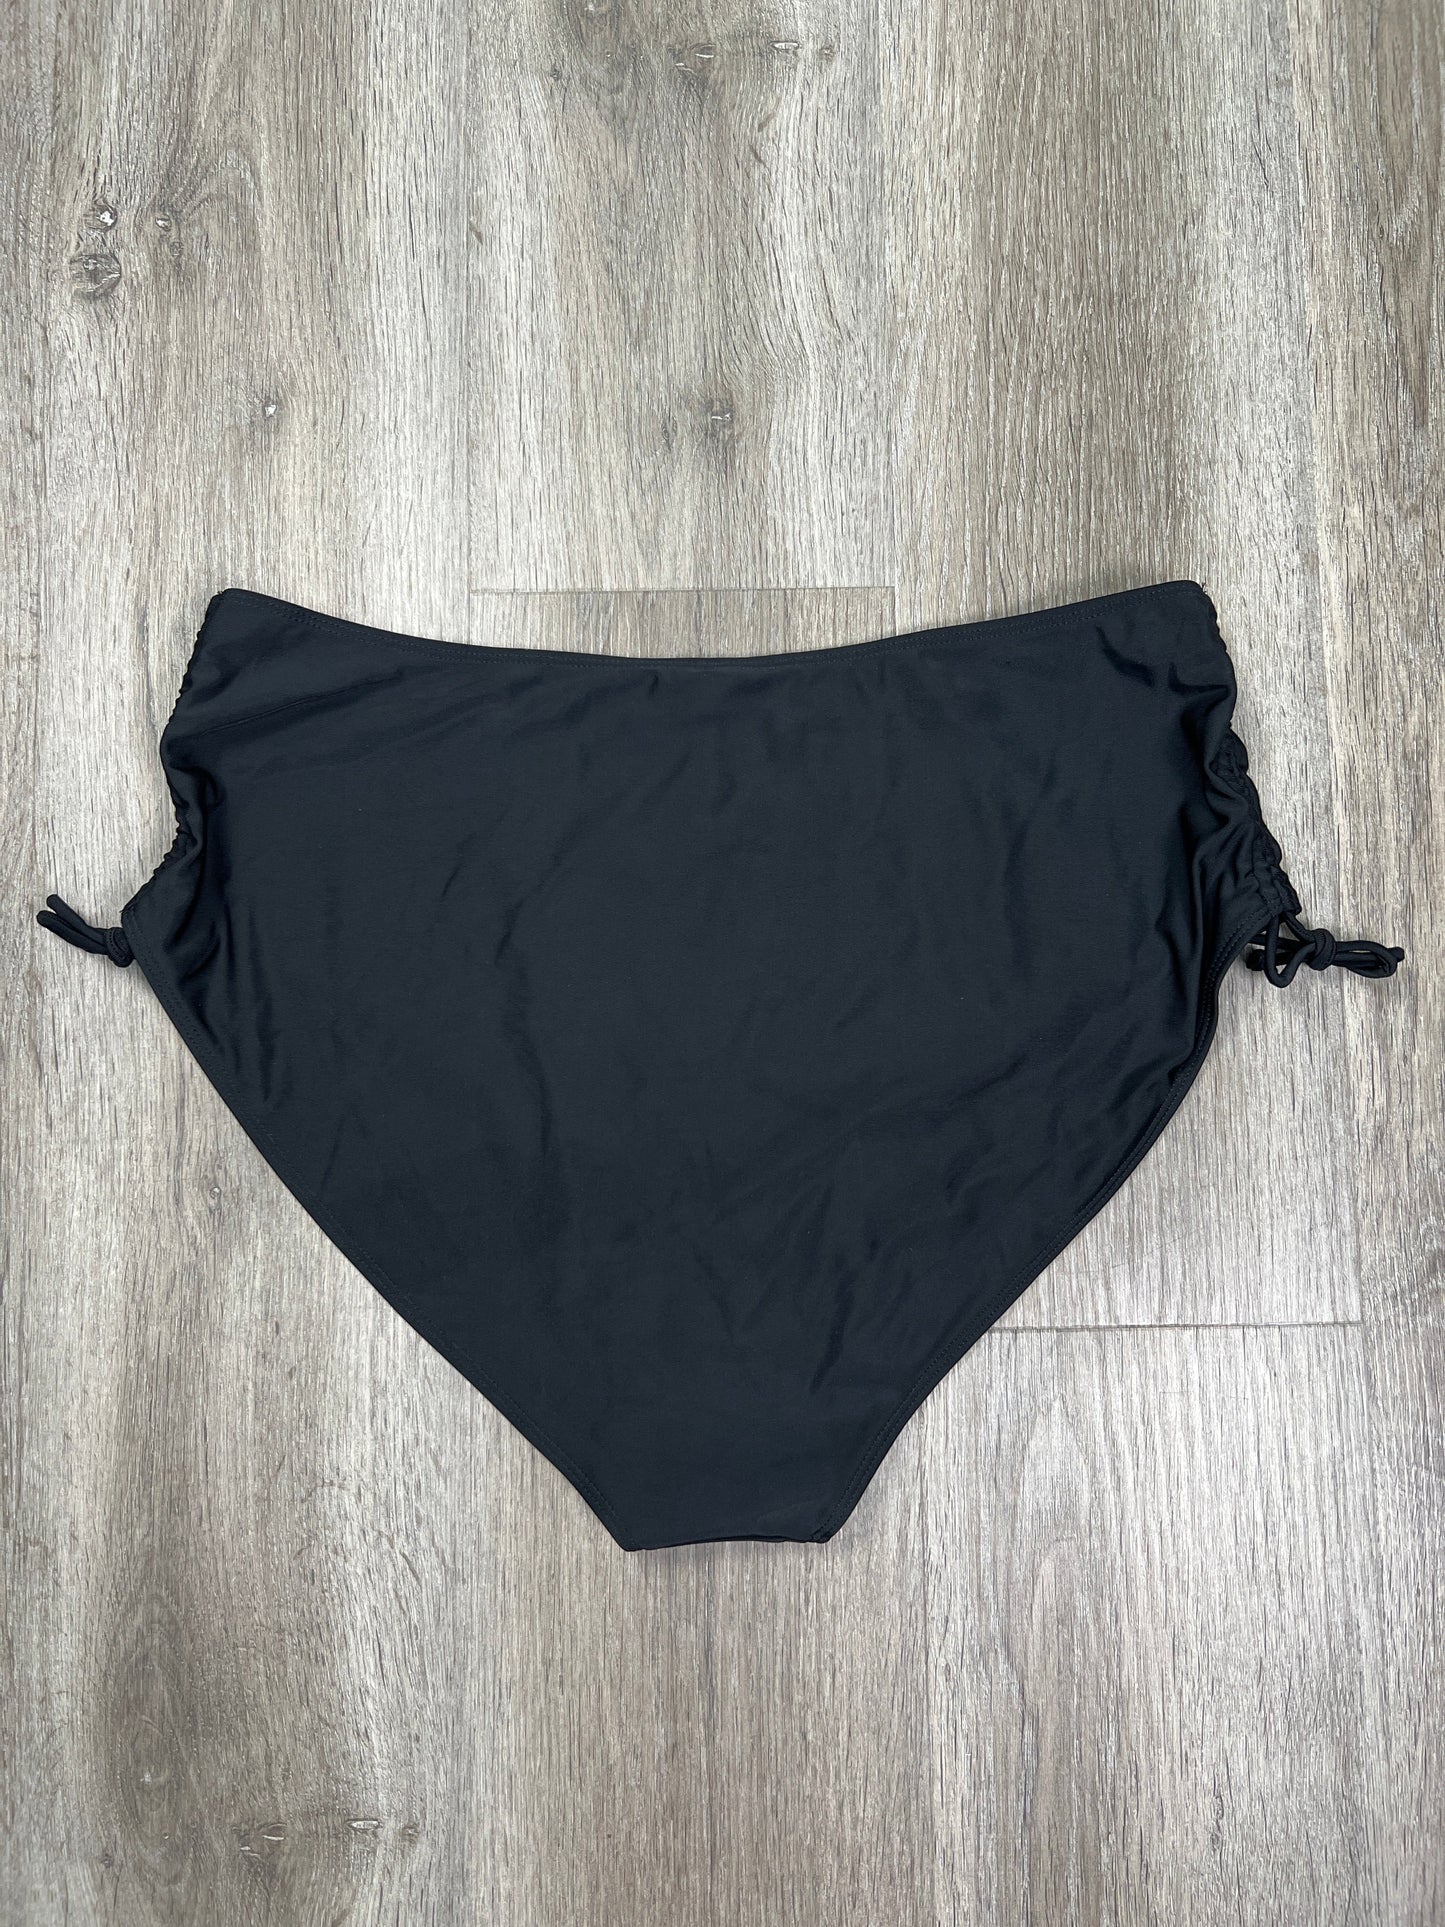 Black Swimsuit Bottom Shein, Size 3x